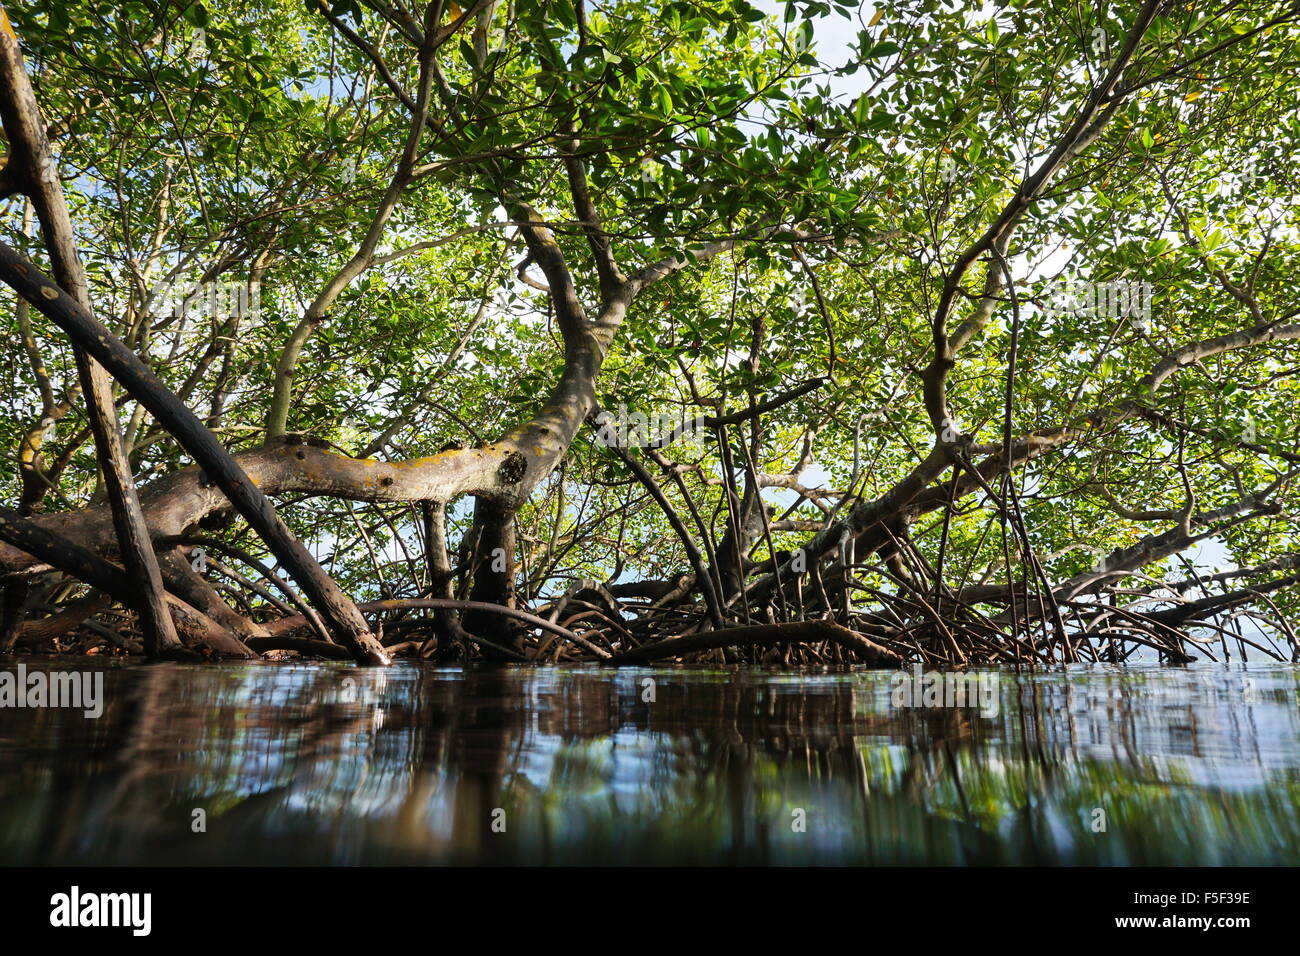 Red alberi di mangrovia in acqua visto dalla superficie del mare, Panama America Centrale Foto Stock